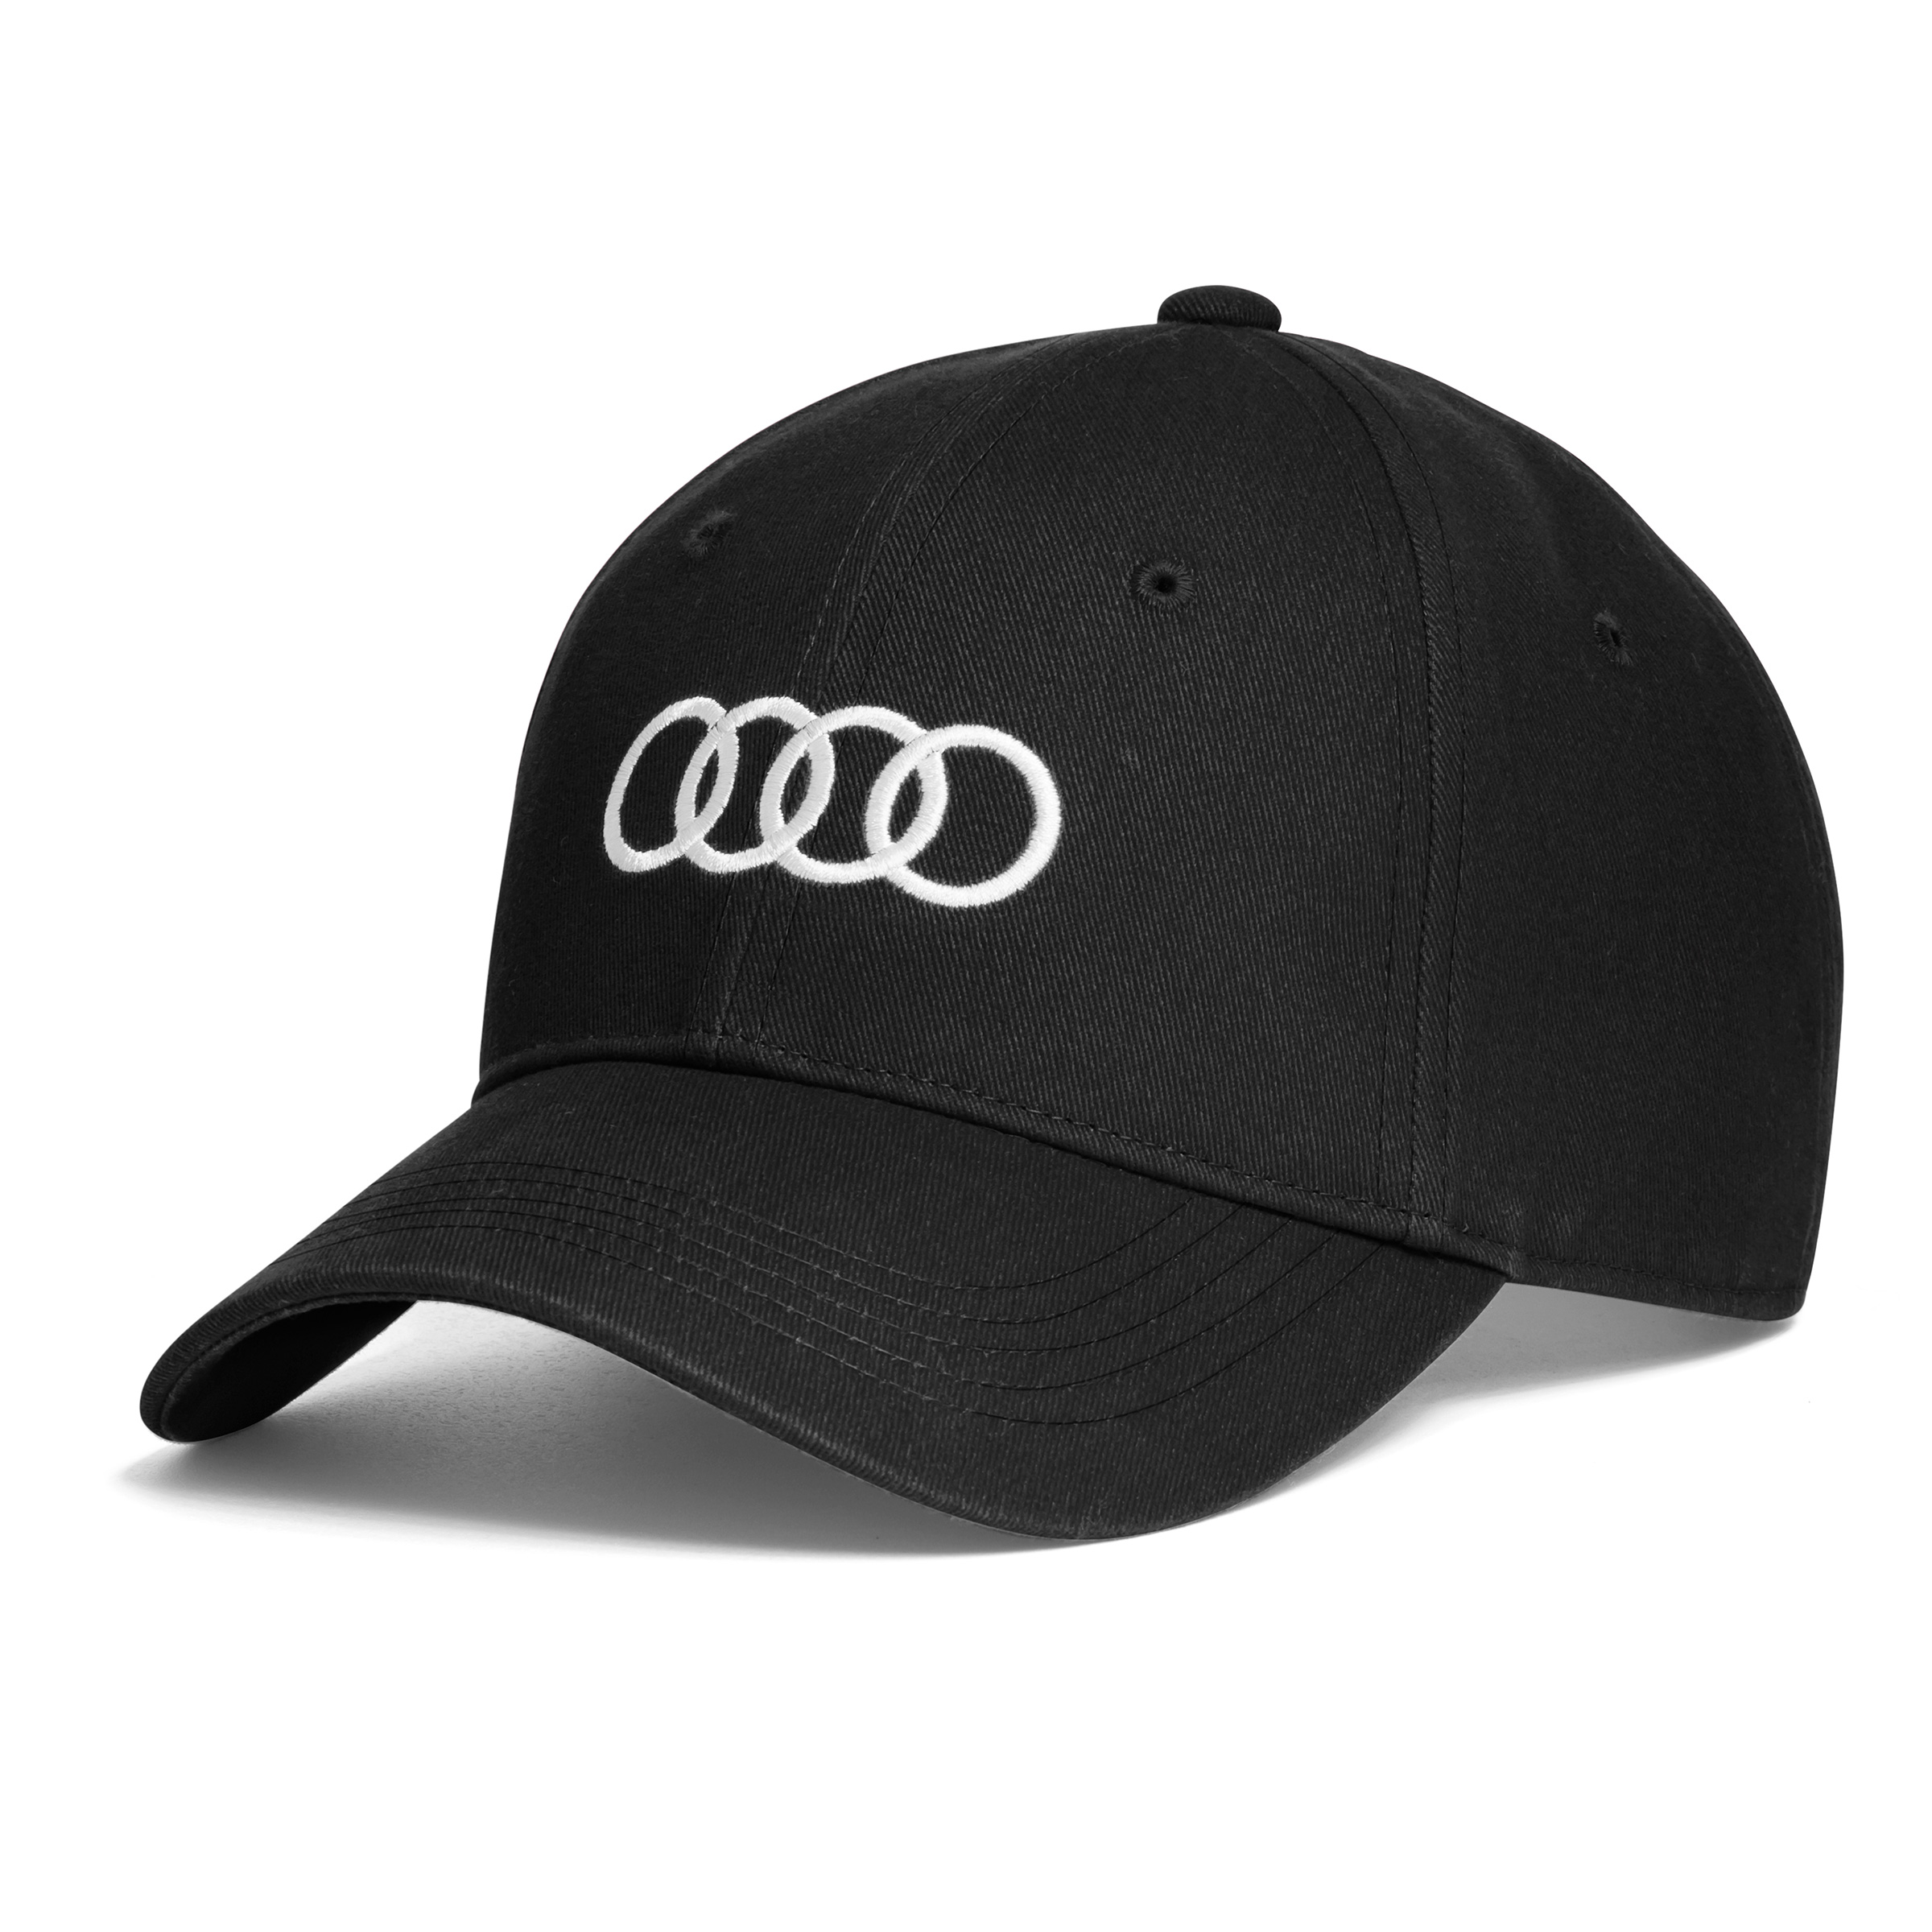 Original Audi Cap Baseballkappe Baseballcap Basecap Mütze schwarz